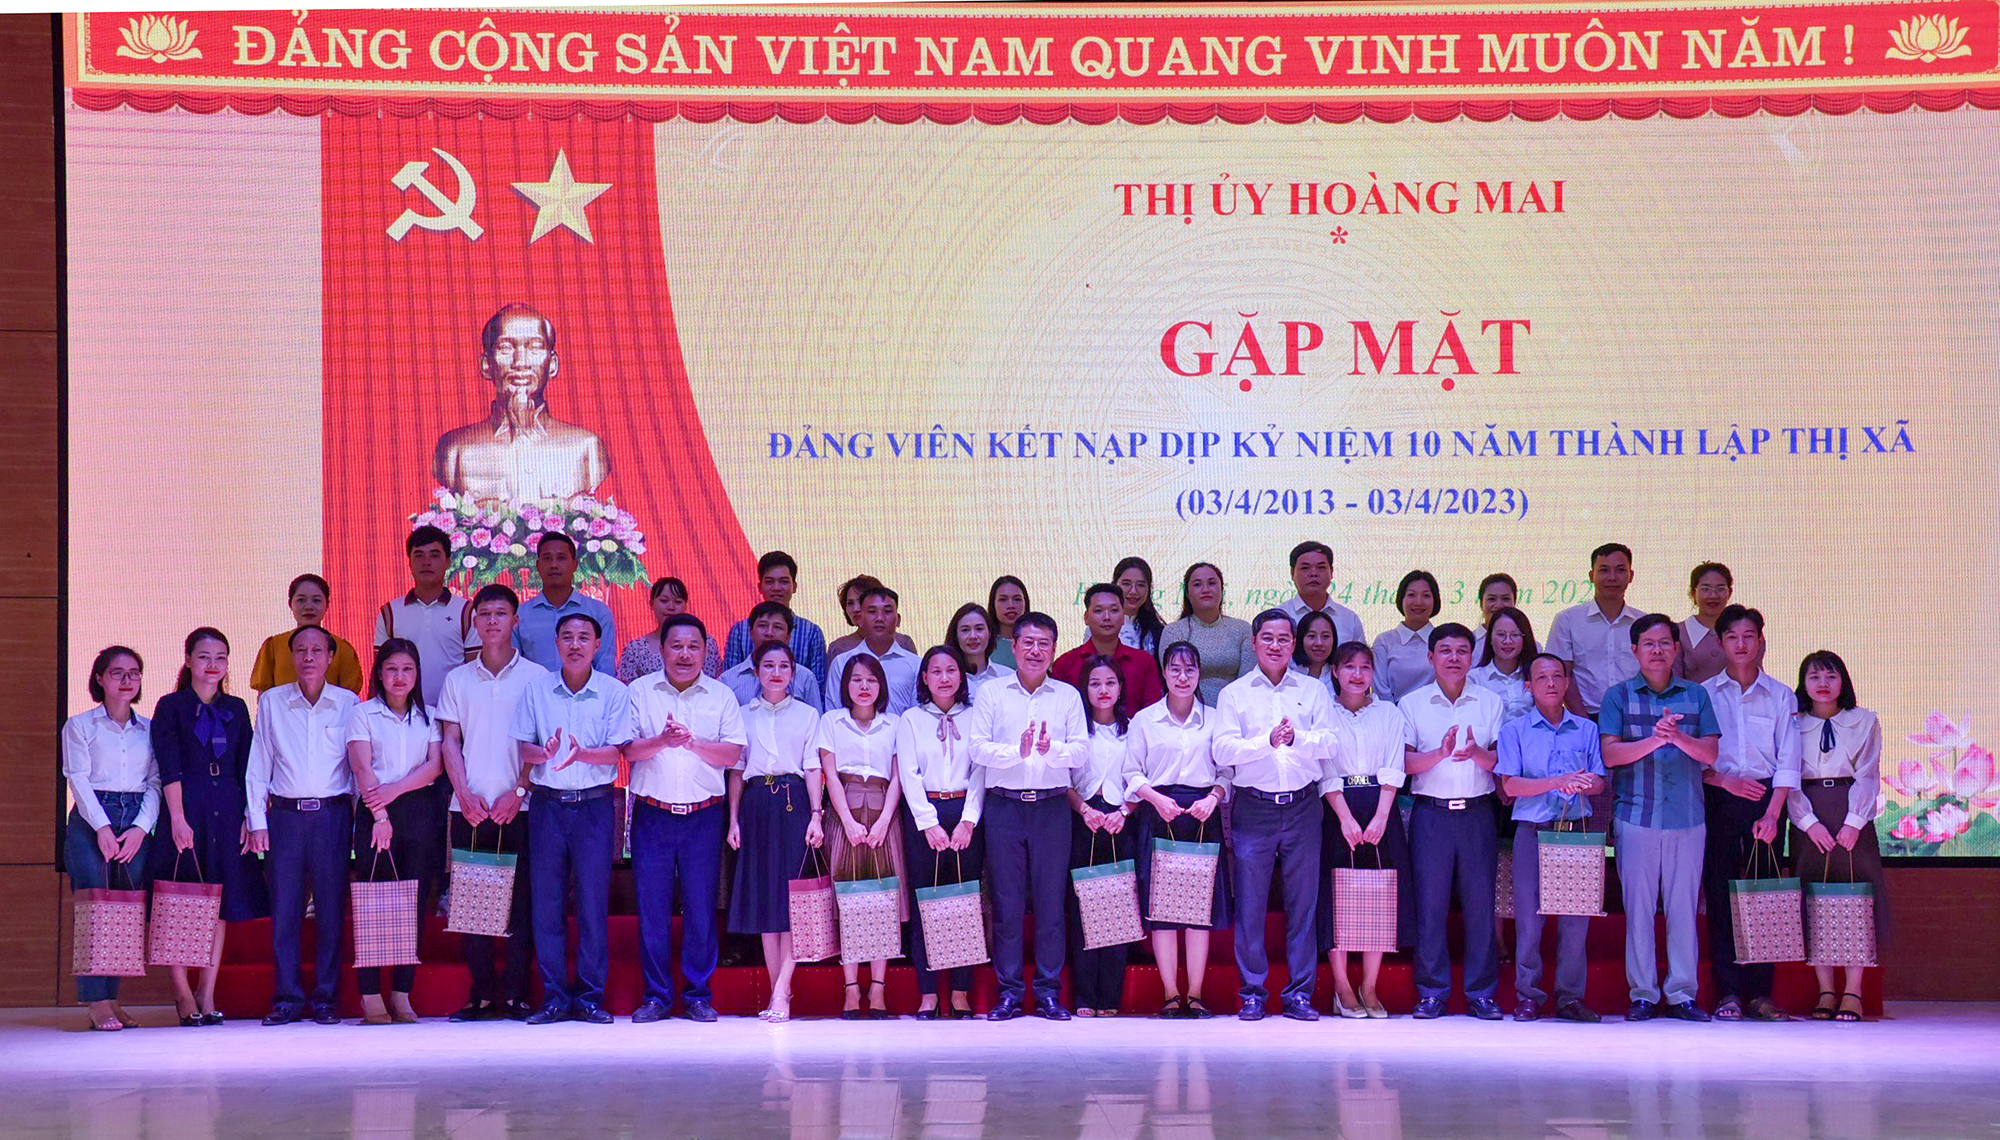 Thị ủy Hoàng Mai gặp mặt các đảng viên kết nạp dịp kỷ niệm 10 năm thành lập thị xã.